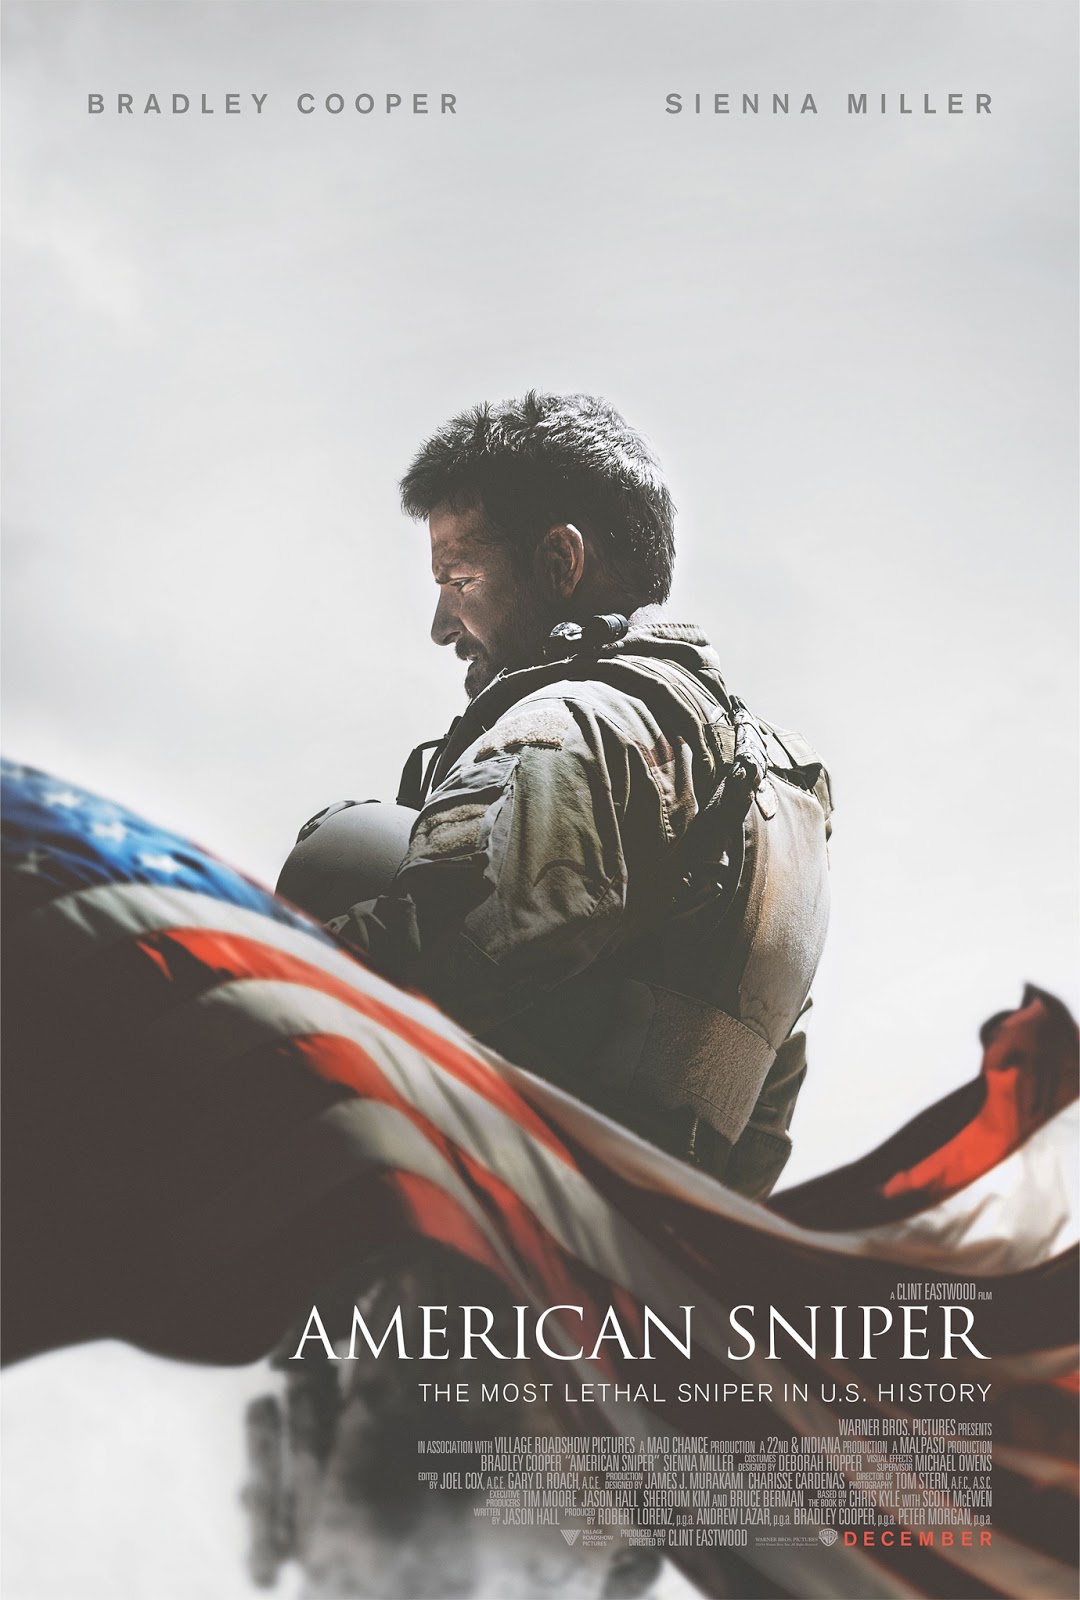 ｃｉａ こちら映画中央情報局です American Sniper 狙った標的は絶対致死 イラクで150名以上を射殺した米軍史上最強の狙撃手の短い生涯を クリント イーストウッド監督が ブラッドレイ クーパー主演で映画化した社会派の問題作 アメリカン スナイパー が息